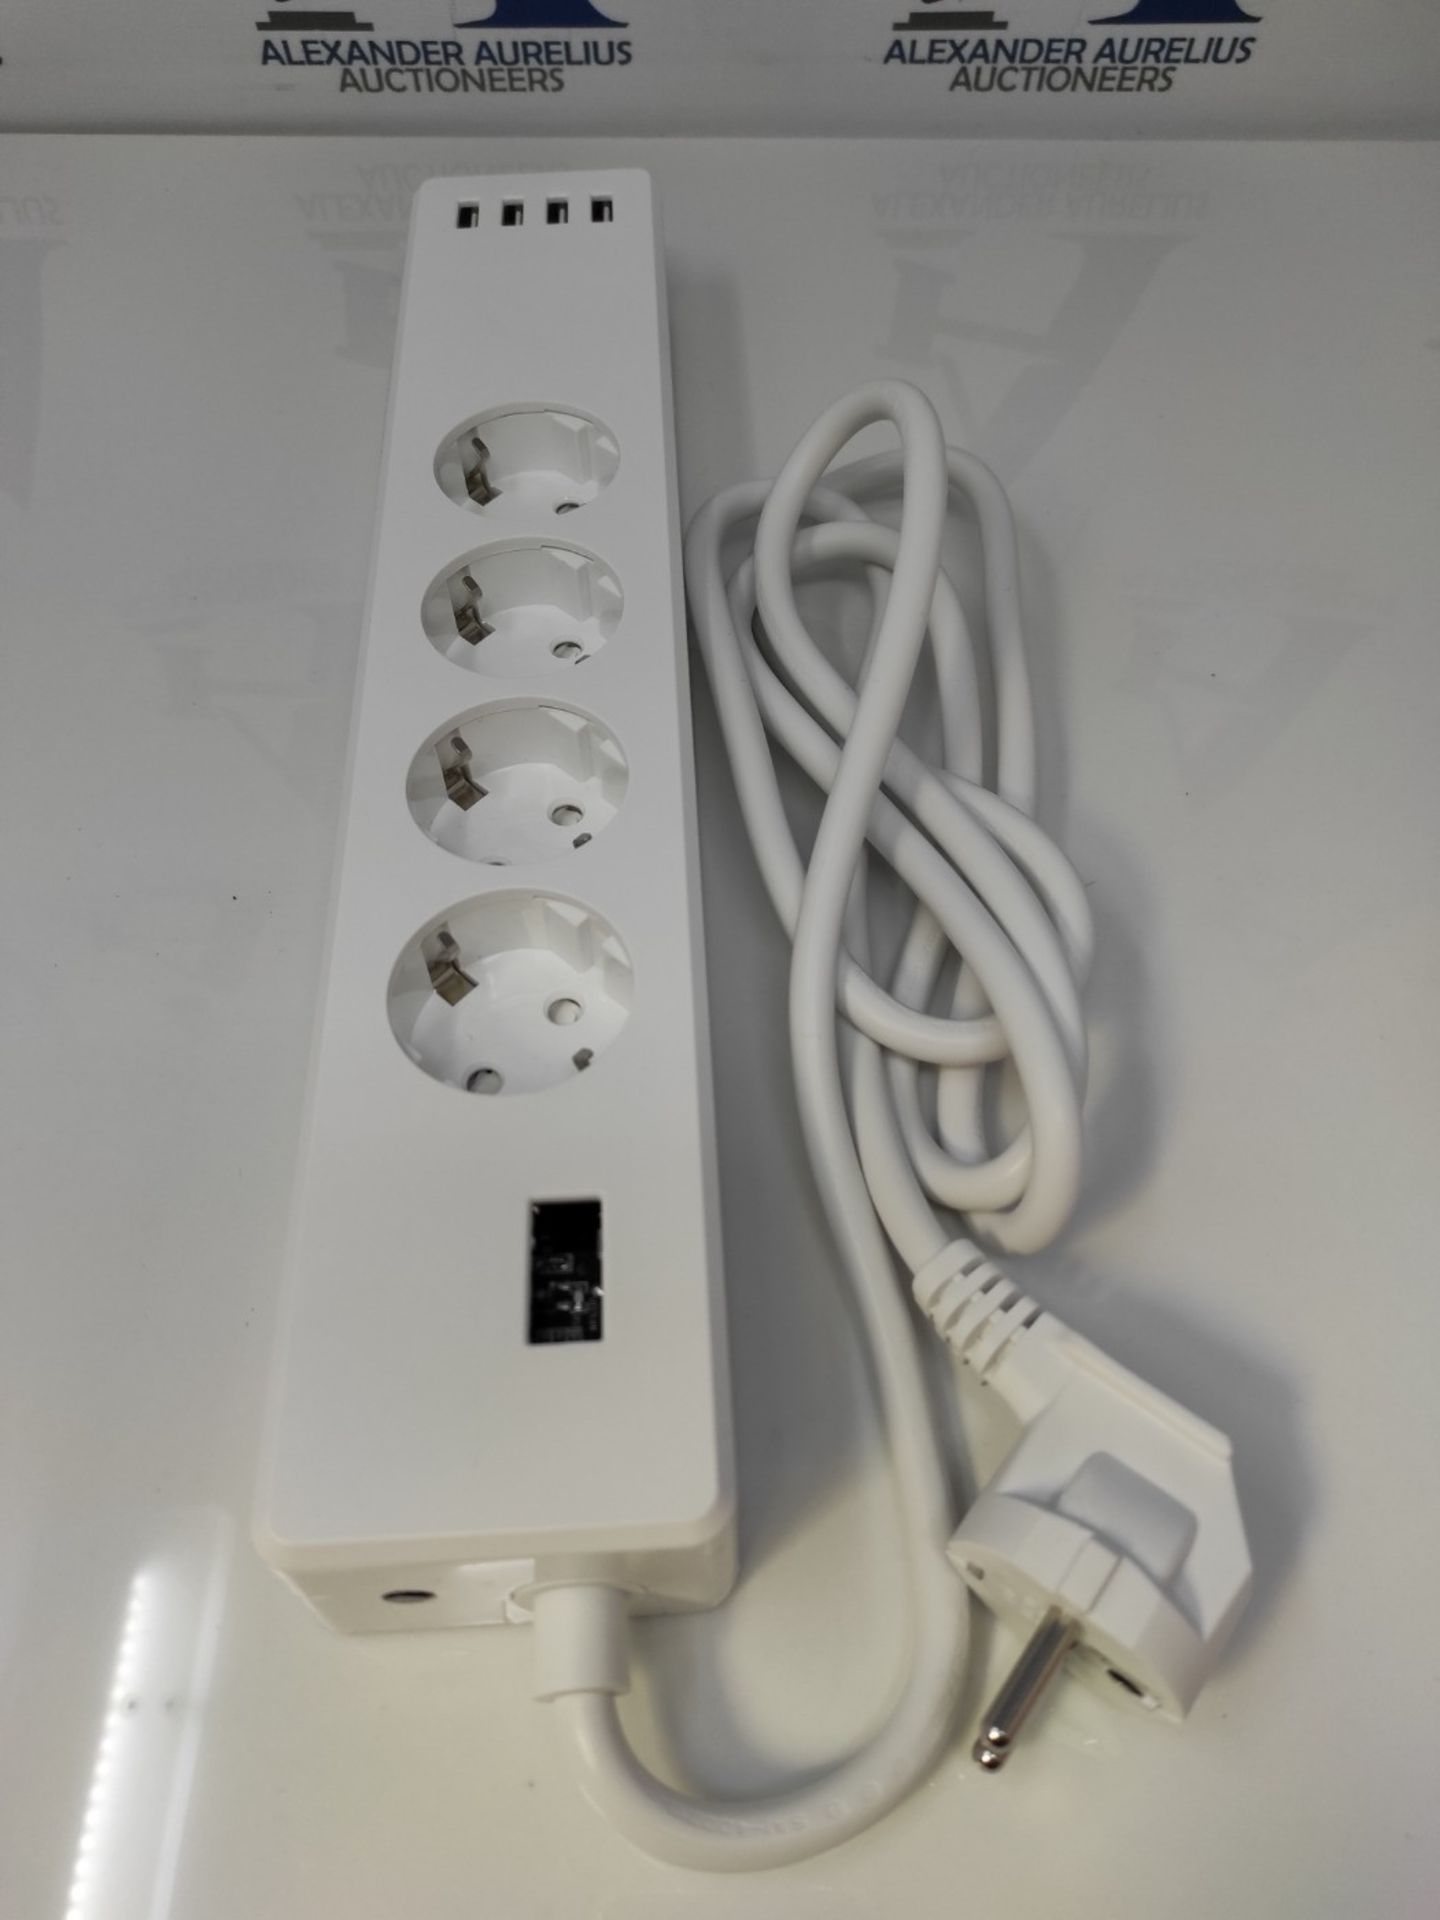 Meross 4000W WiFi Smart Power Strip Alexa, Voice Control Power Strip with 4 Sockets 4 - Image 2 of 2